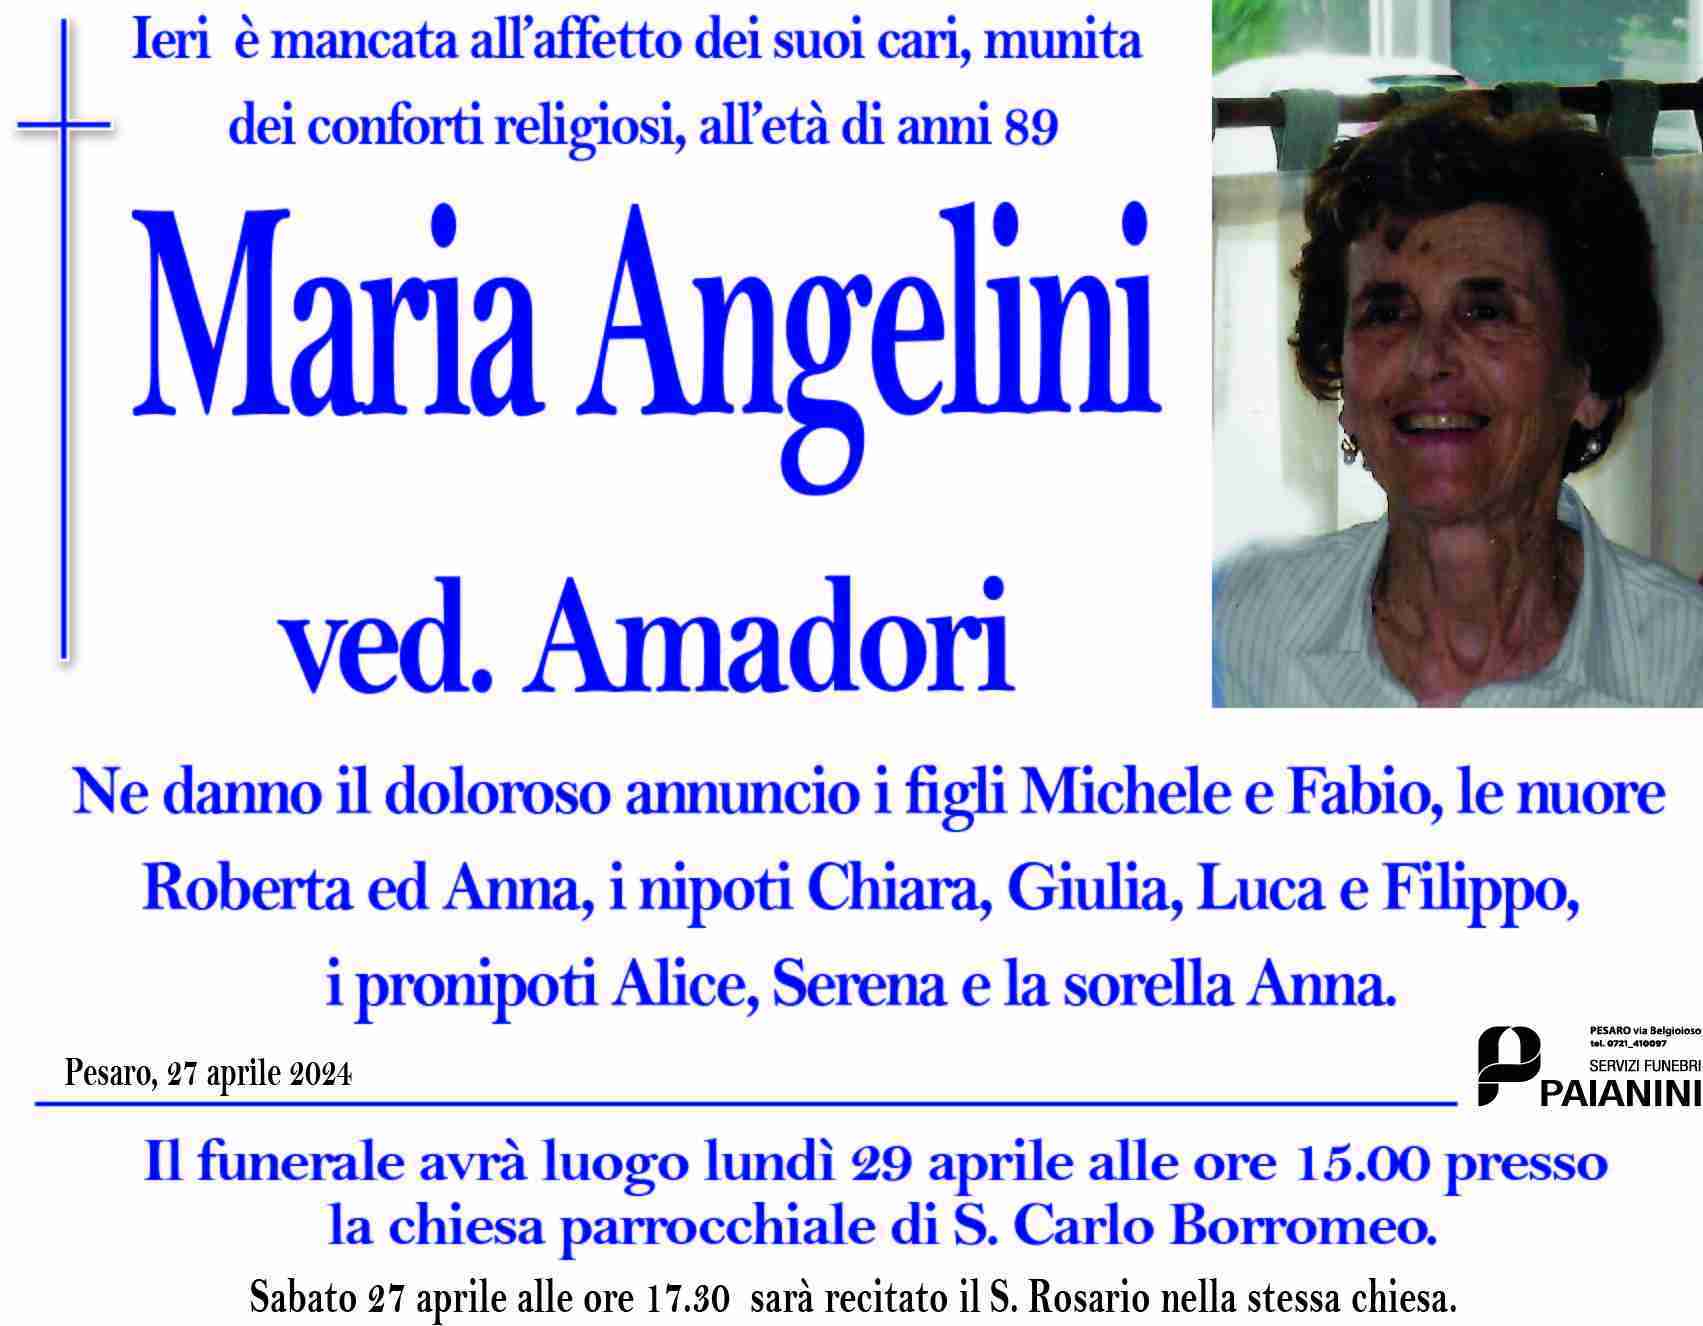 Maria Angelini